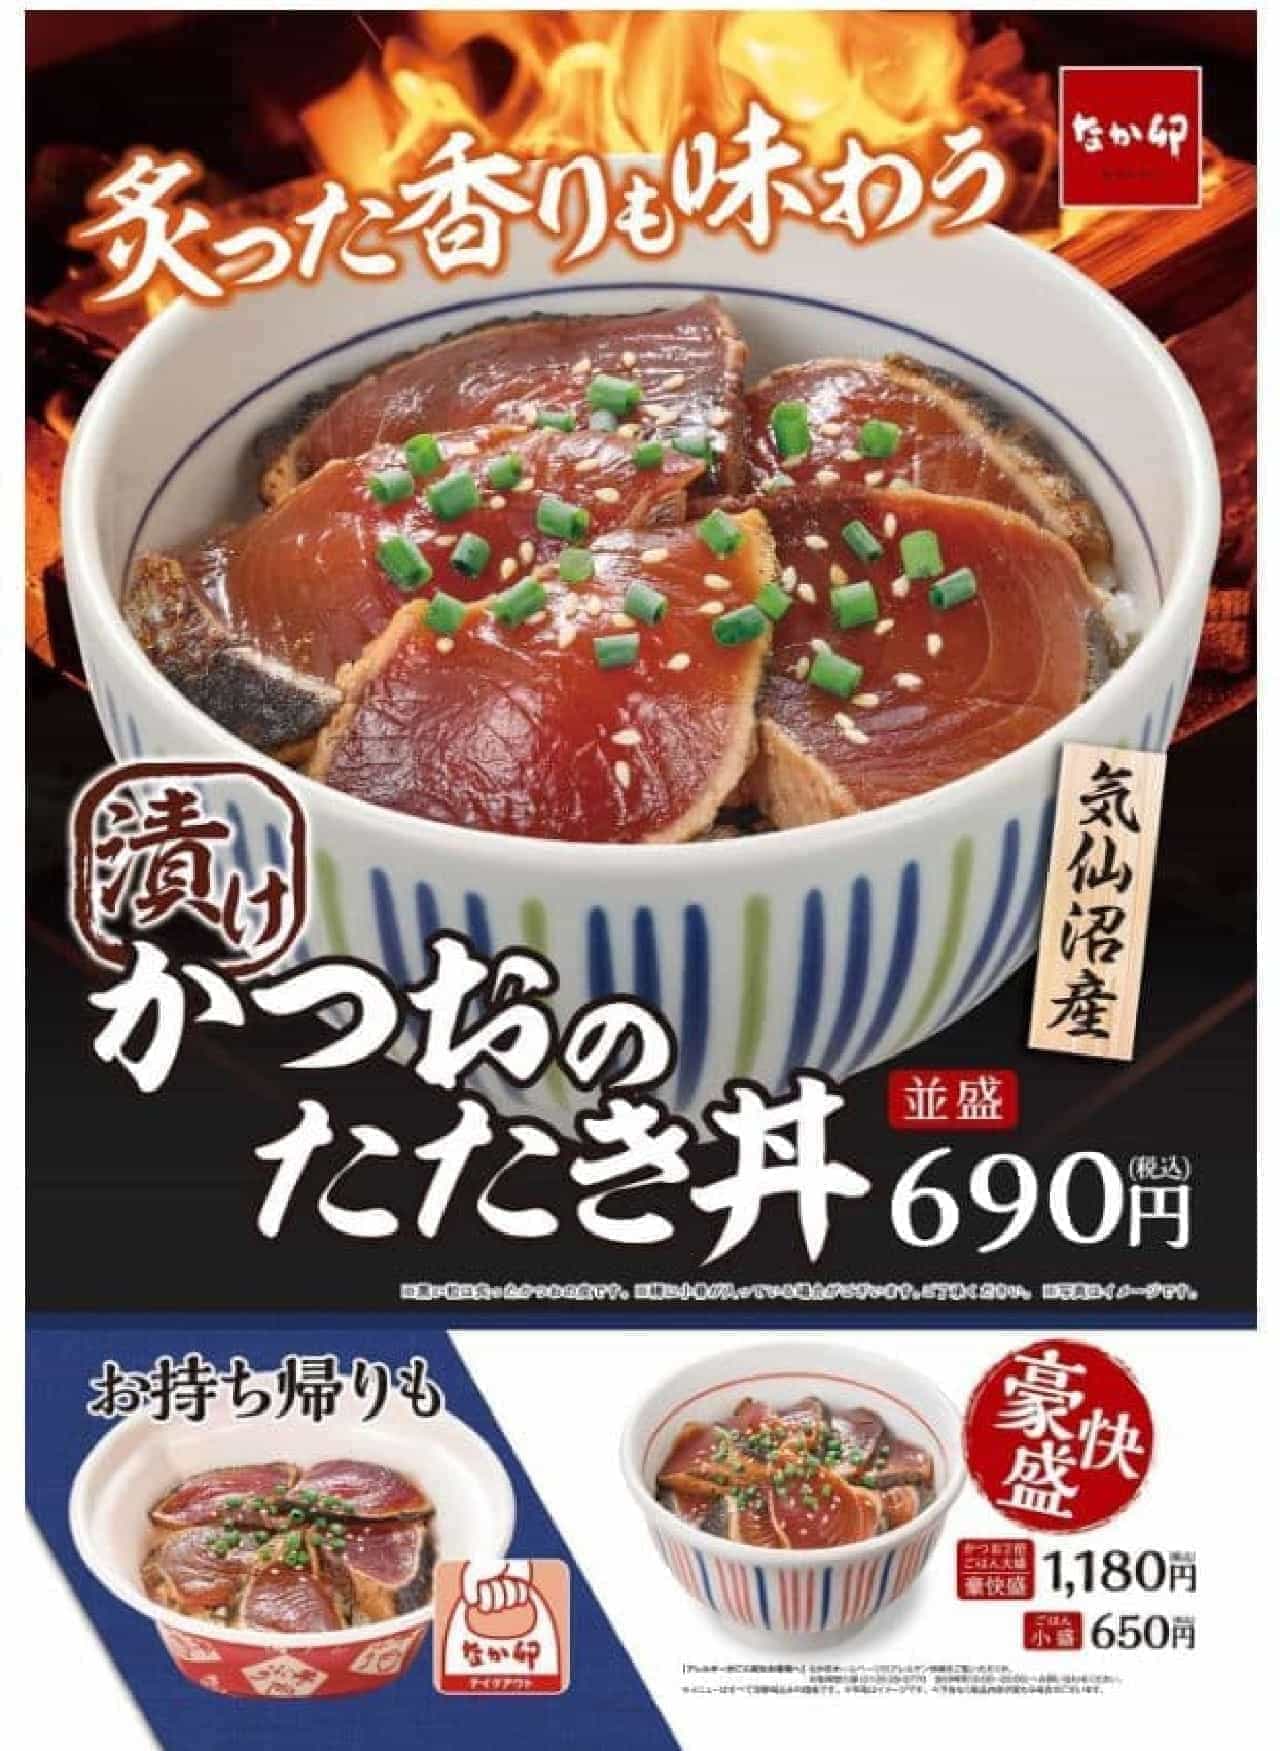 Nakau "Katsuo no Tataki Donburi" (Bonito Tataki Bowl)